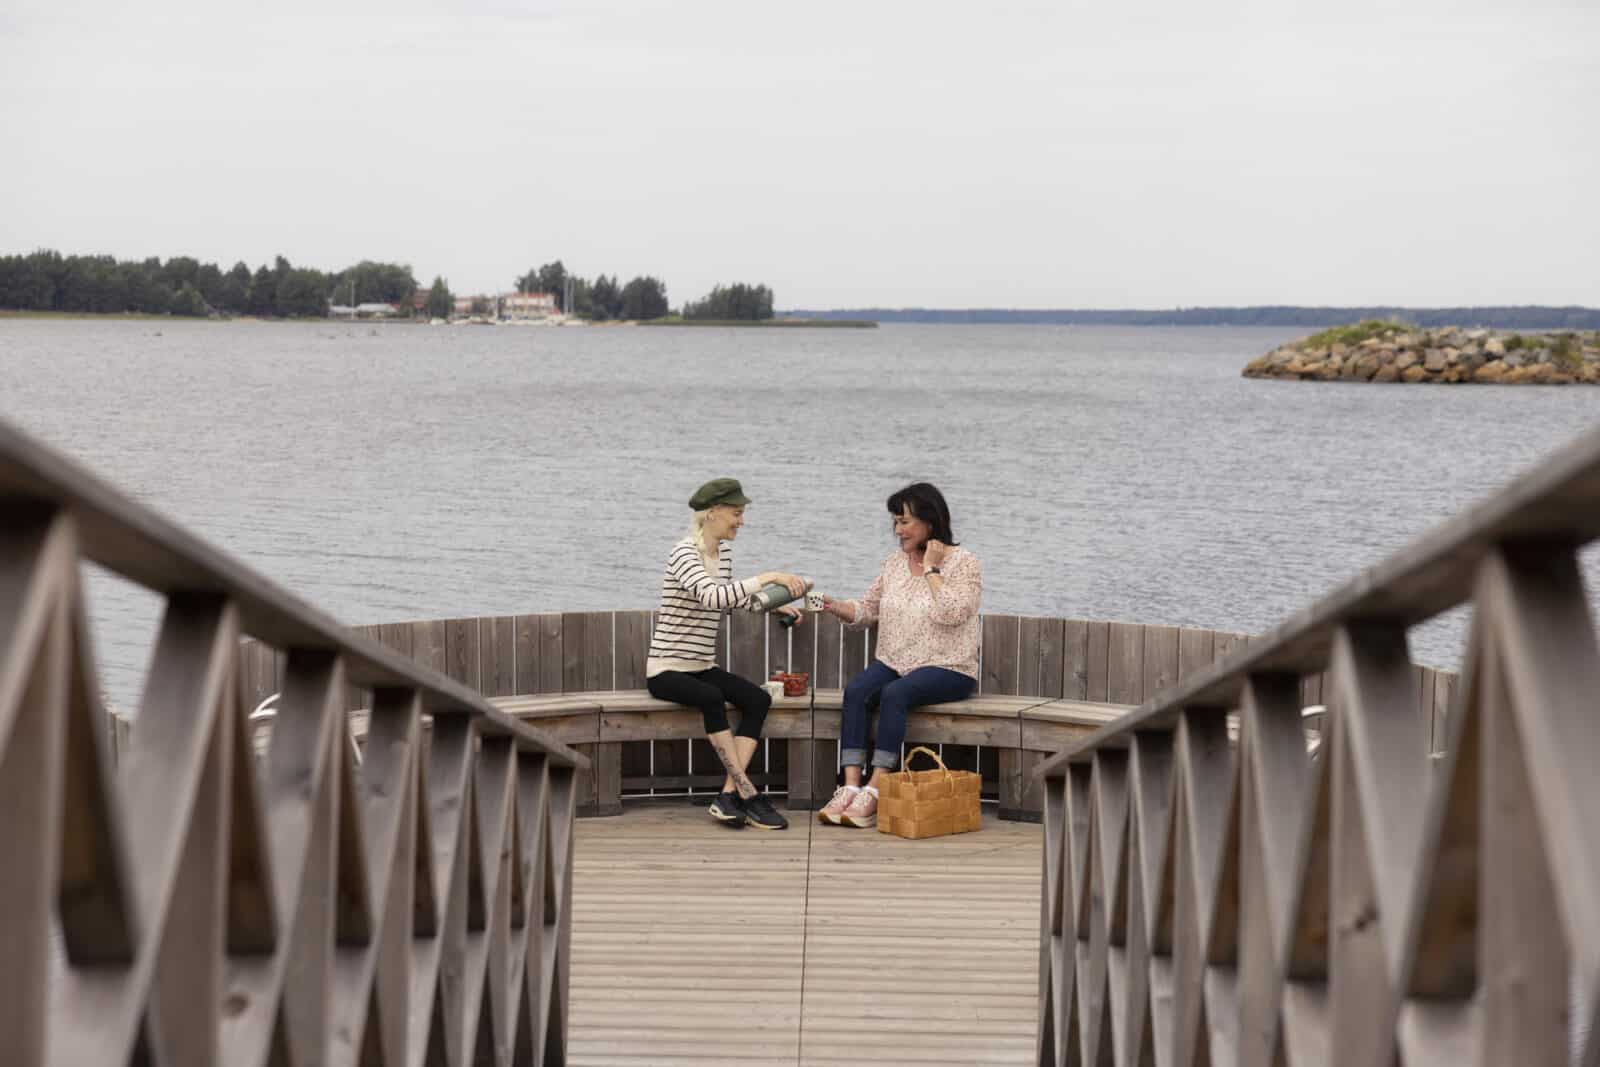 Kaksi naista istuu laiturilla eväskorin kanssa. Toinen kaataa kahvia toisen kädessä olevaan kuppiin. Taustalla näkyy meri ja aallonmurtaja.